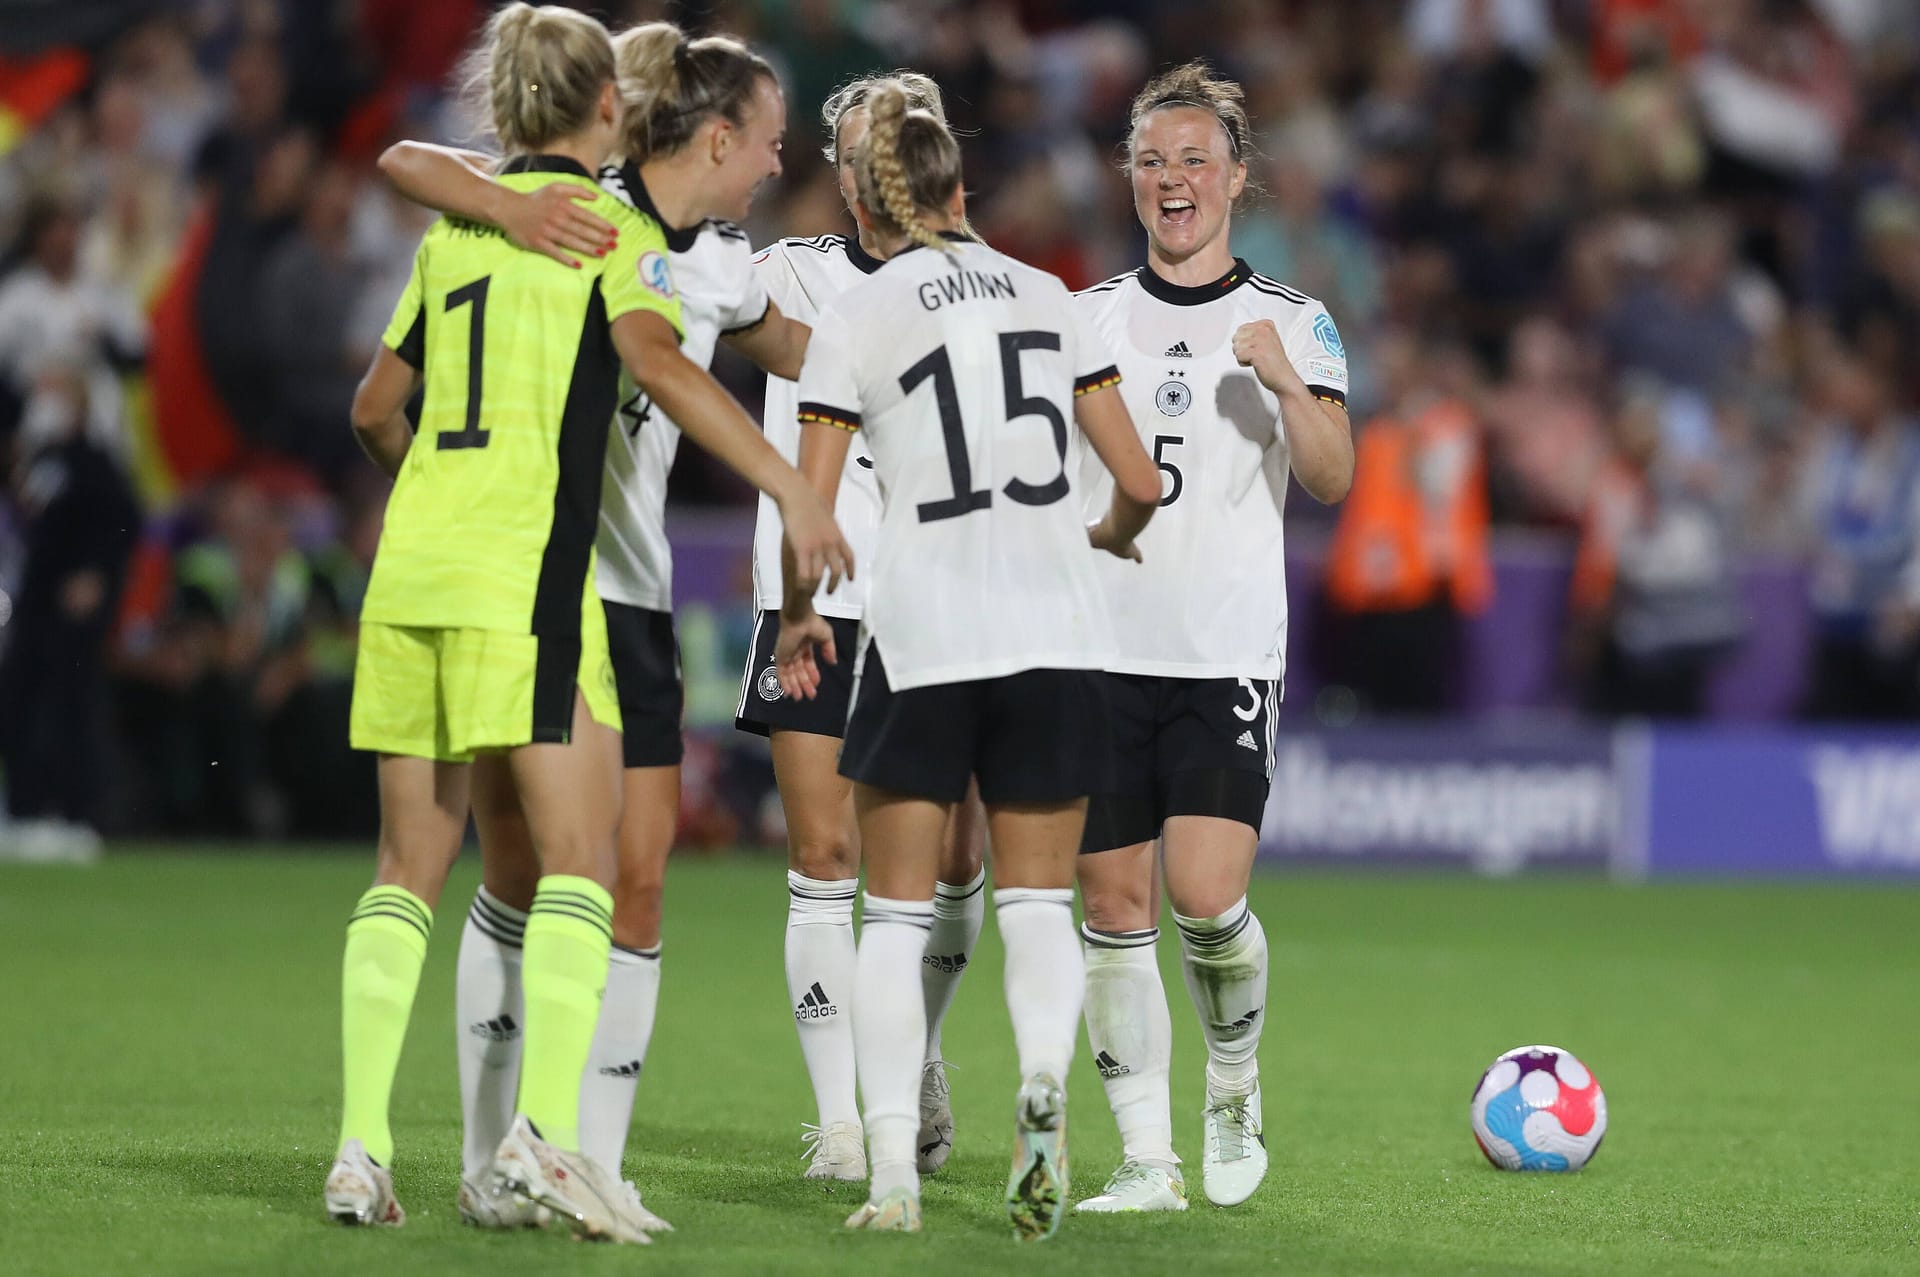 Gegen Spanien spielt Deutschland effizient im Angriff und sicher in der Abwehr. Dabei wissen einige Spielerinnen zu glänzen – besonders eine. Die Einzelkritik.